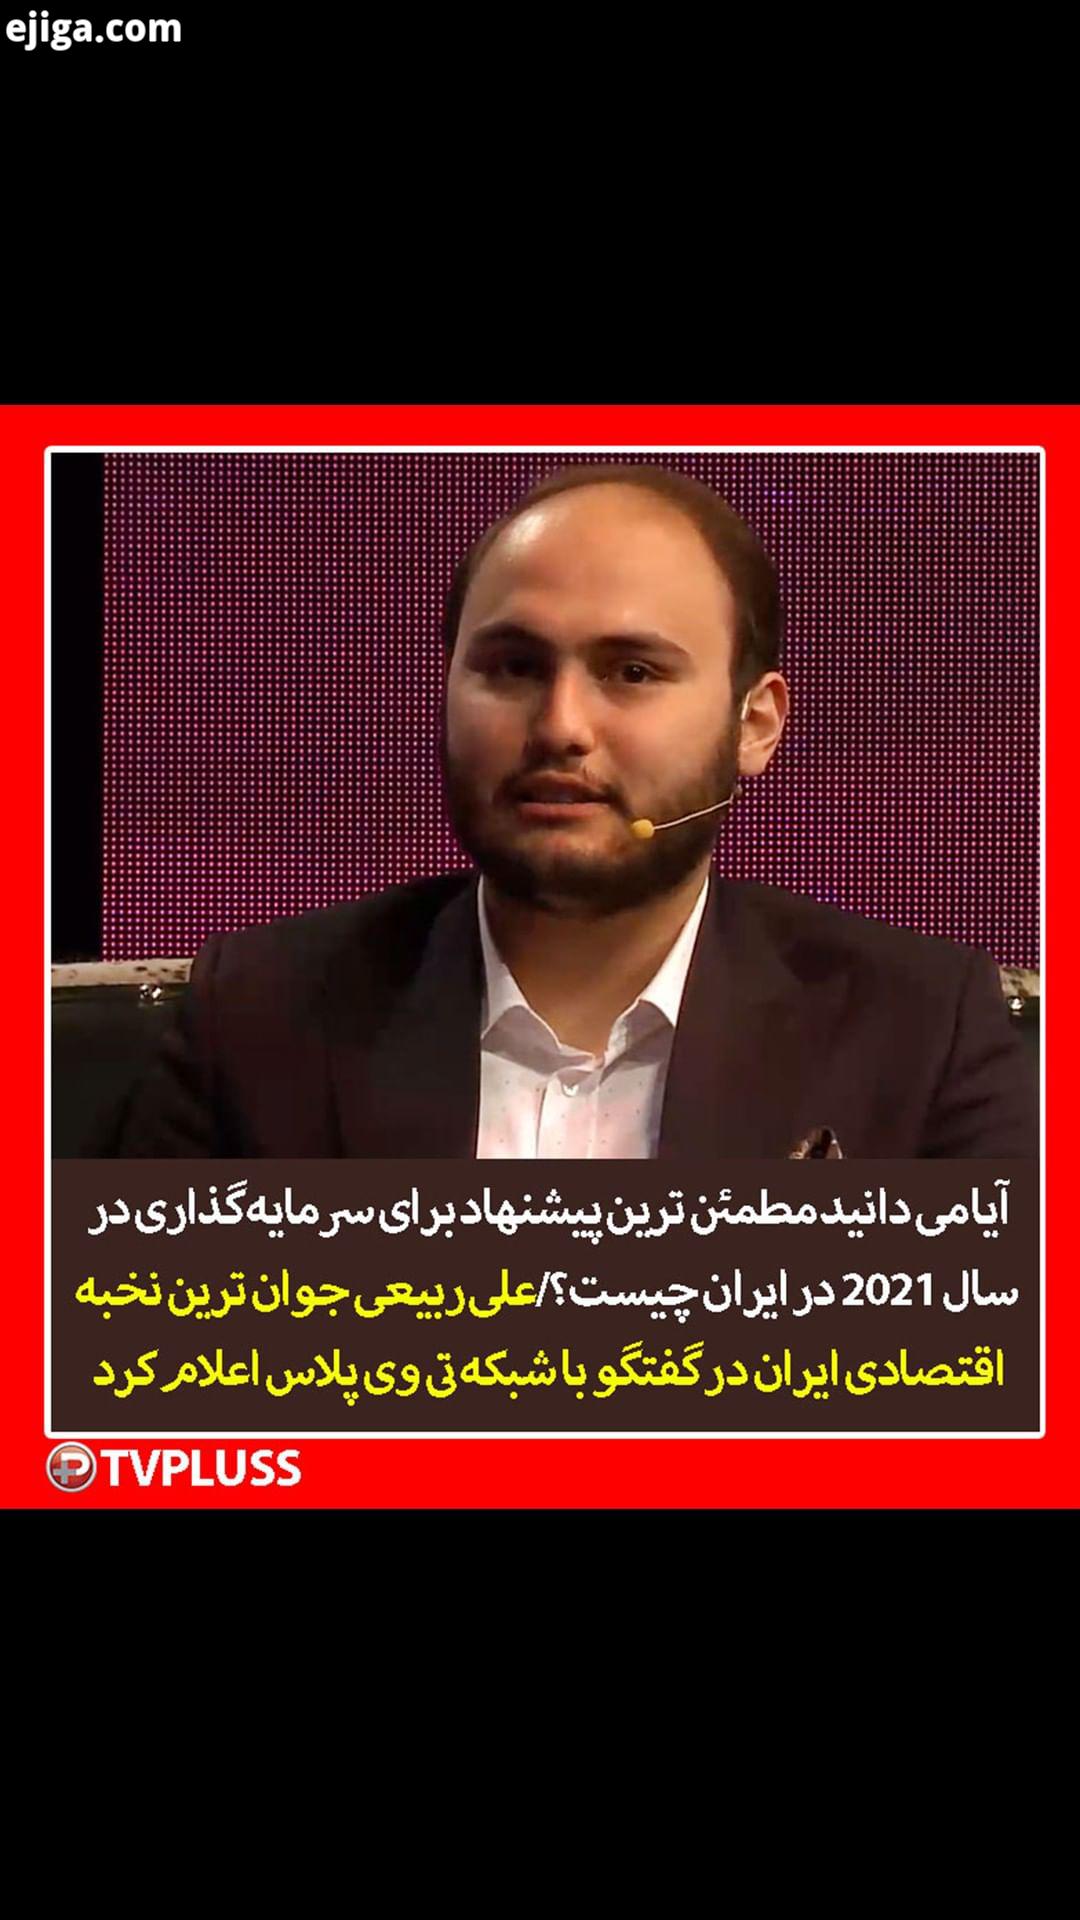 علی ربیعی جوان ترین نخبه اقتصادی ایران در گفتگو با شبکه تی وی پلاس اعلام کرد علی ربیعی مشاوره سرمایه